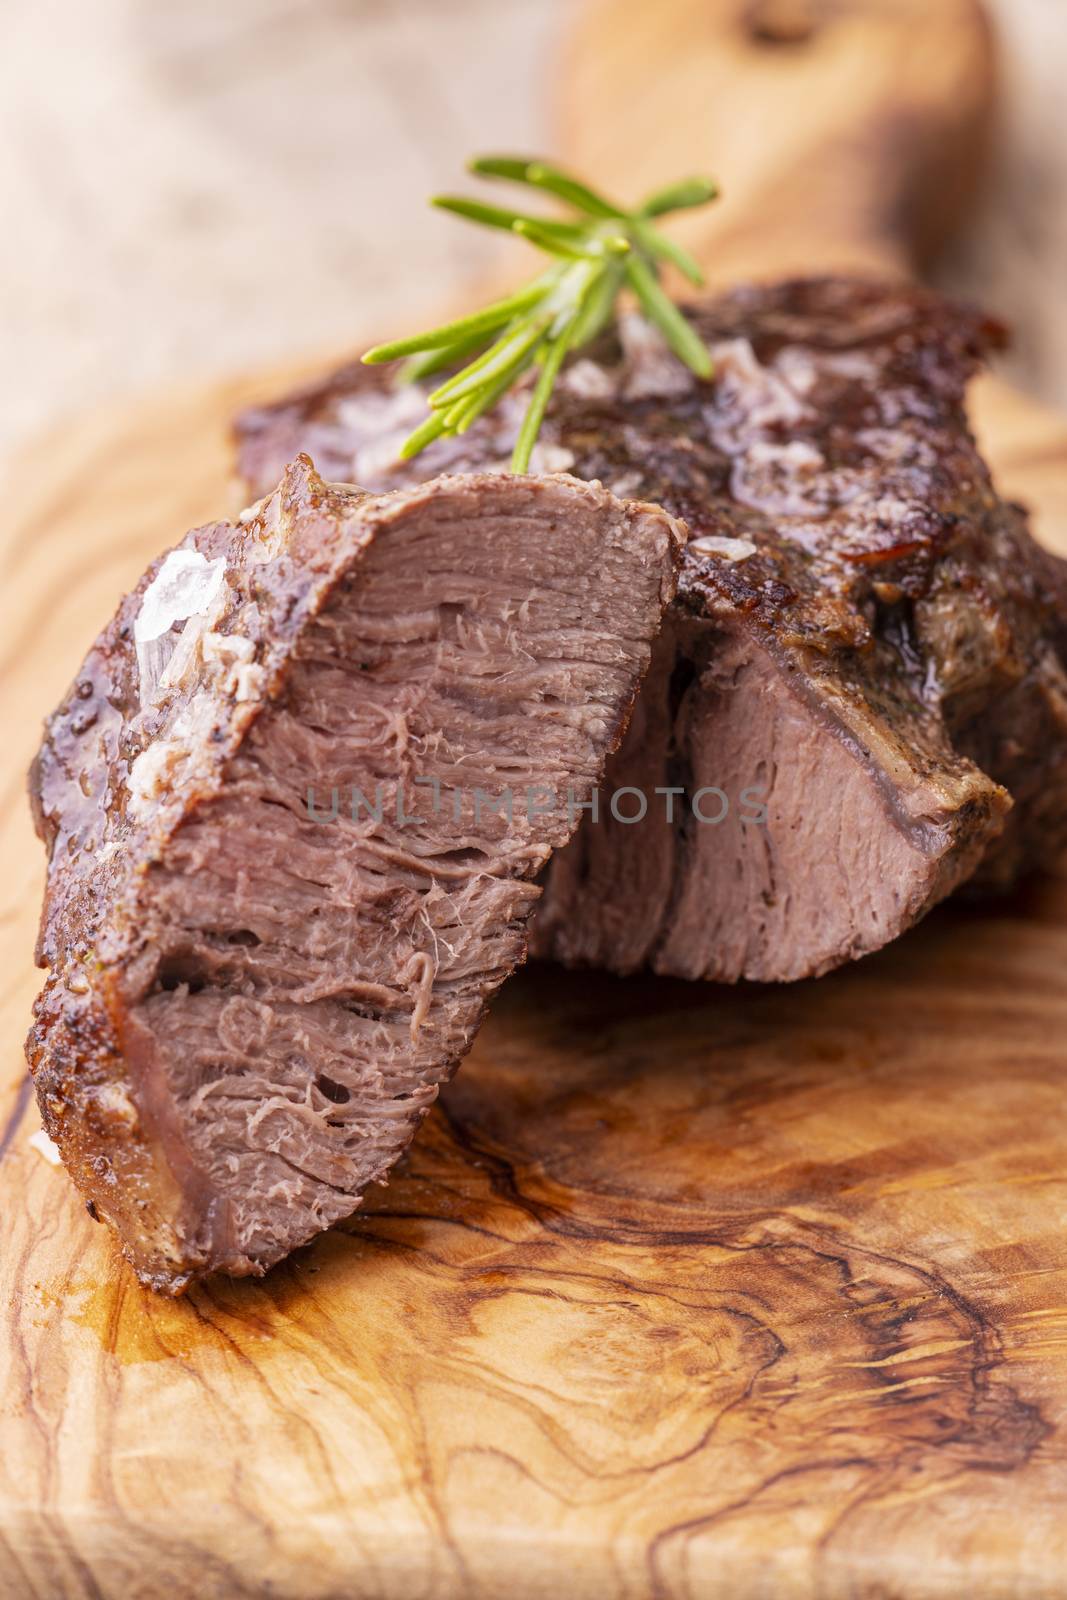 grilled juicy steak on olive wood